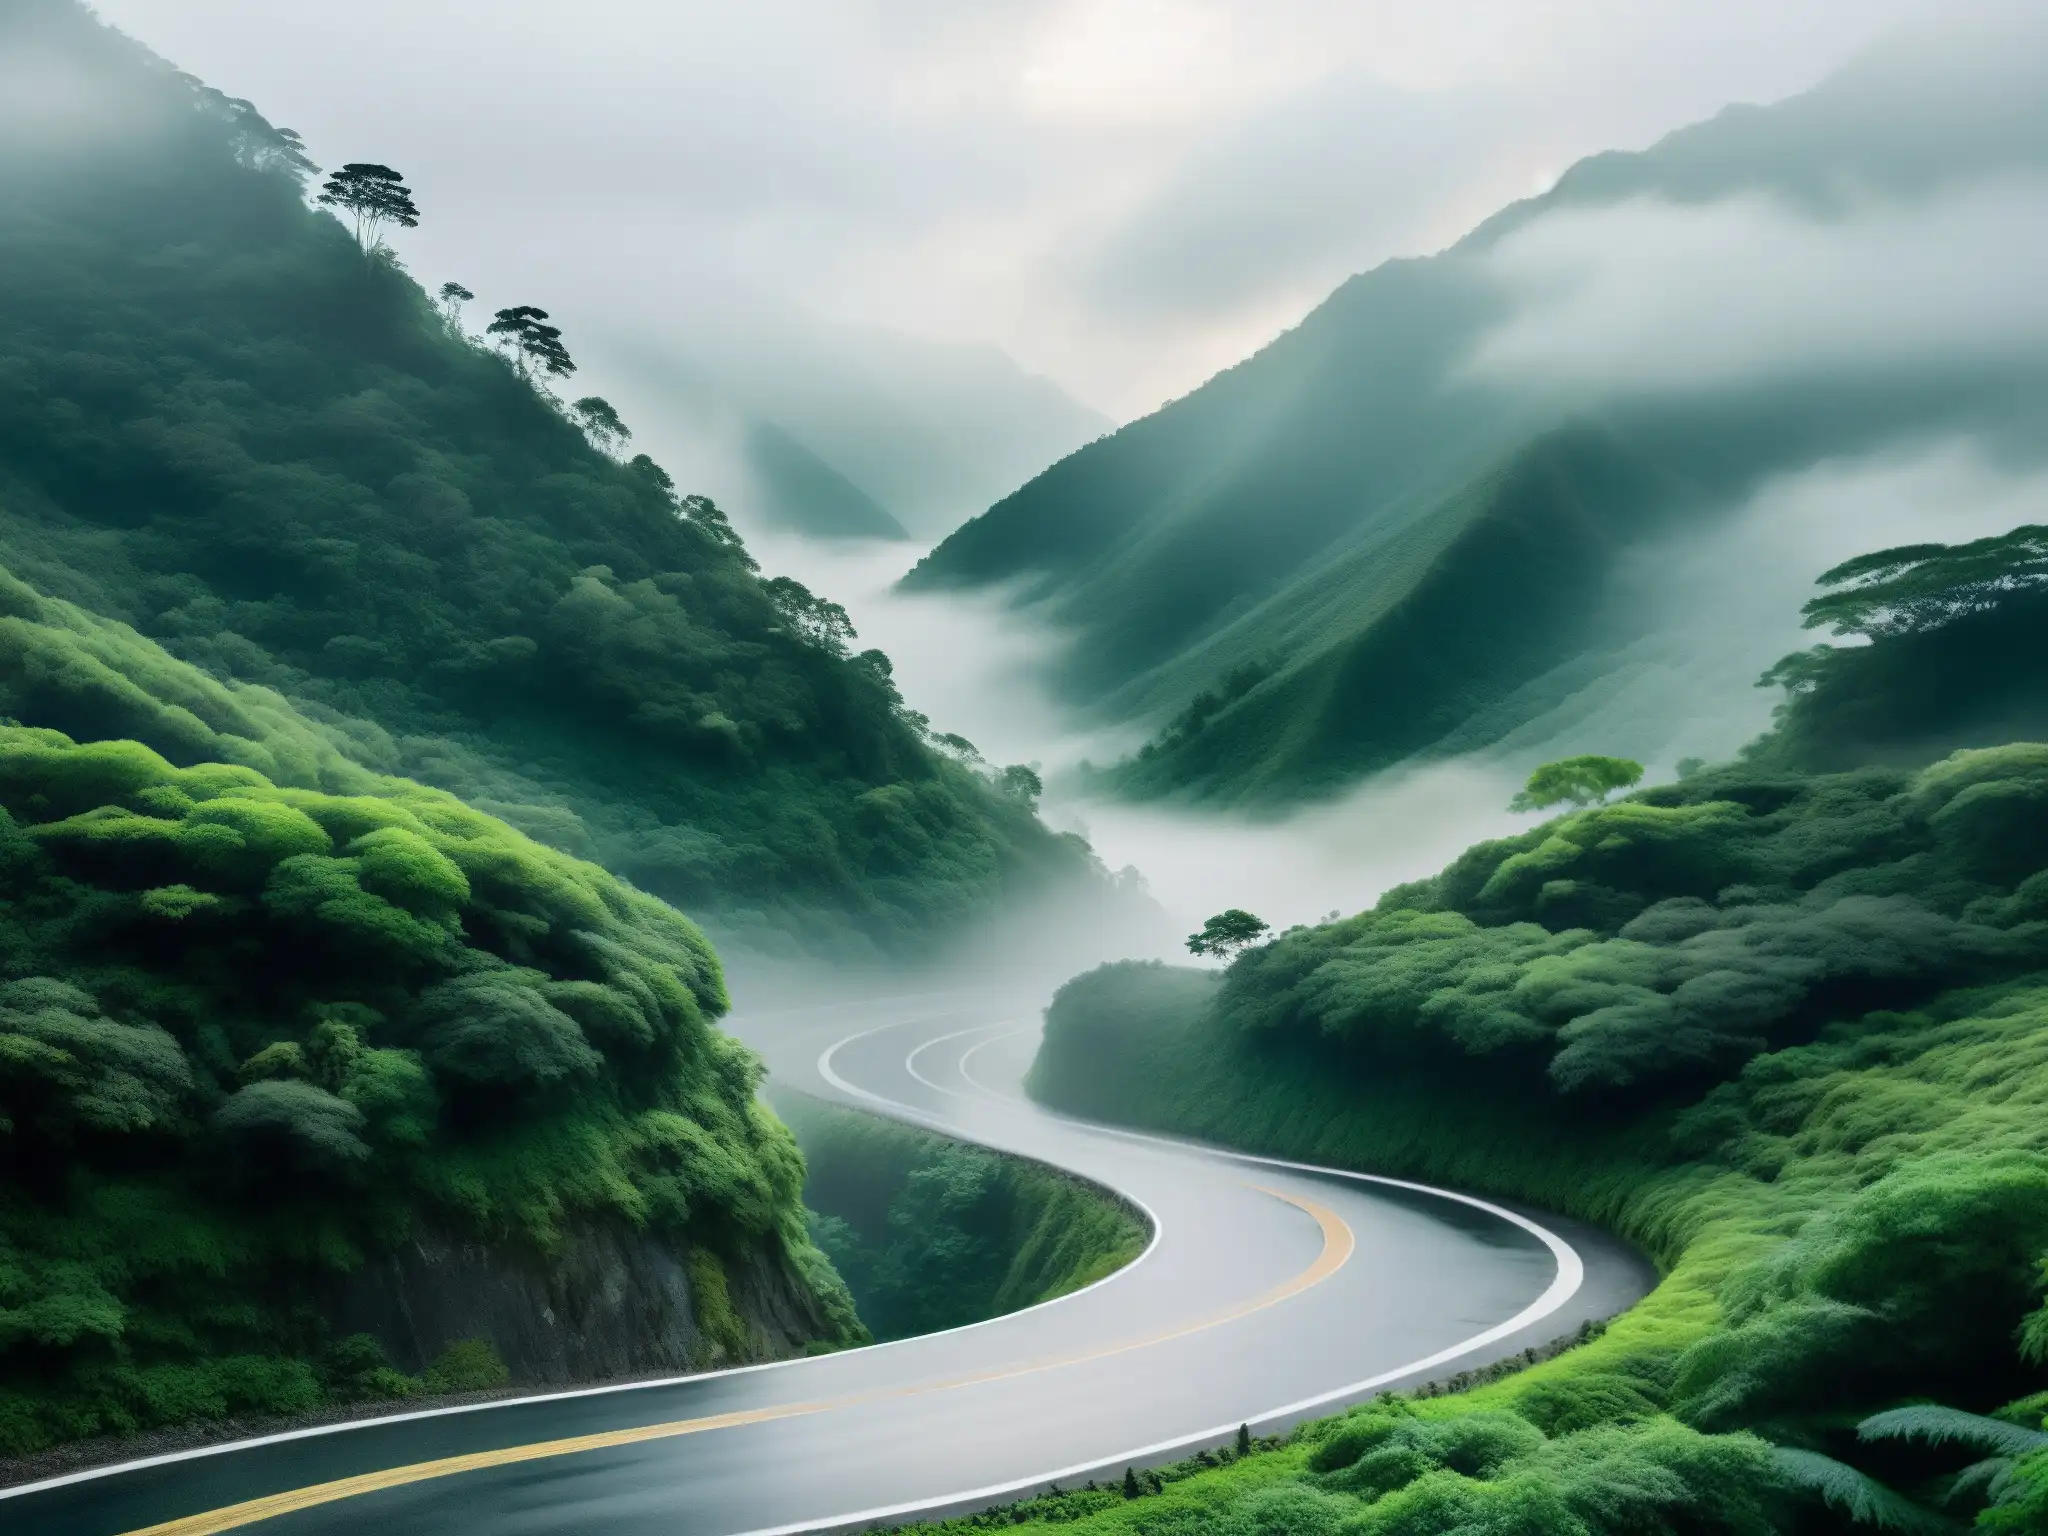 Un misterioso camino montañoso en Taiwán, con figuras fantasmales